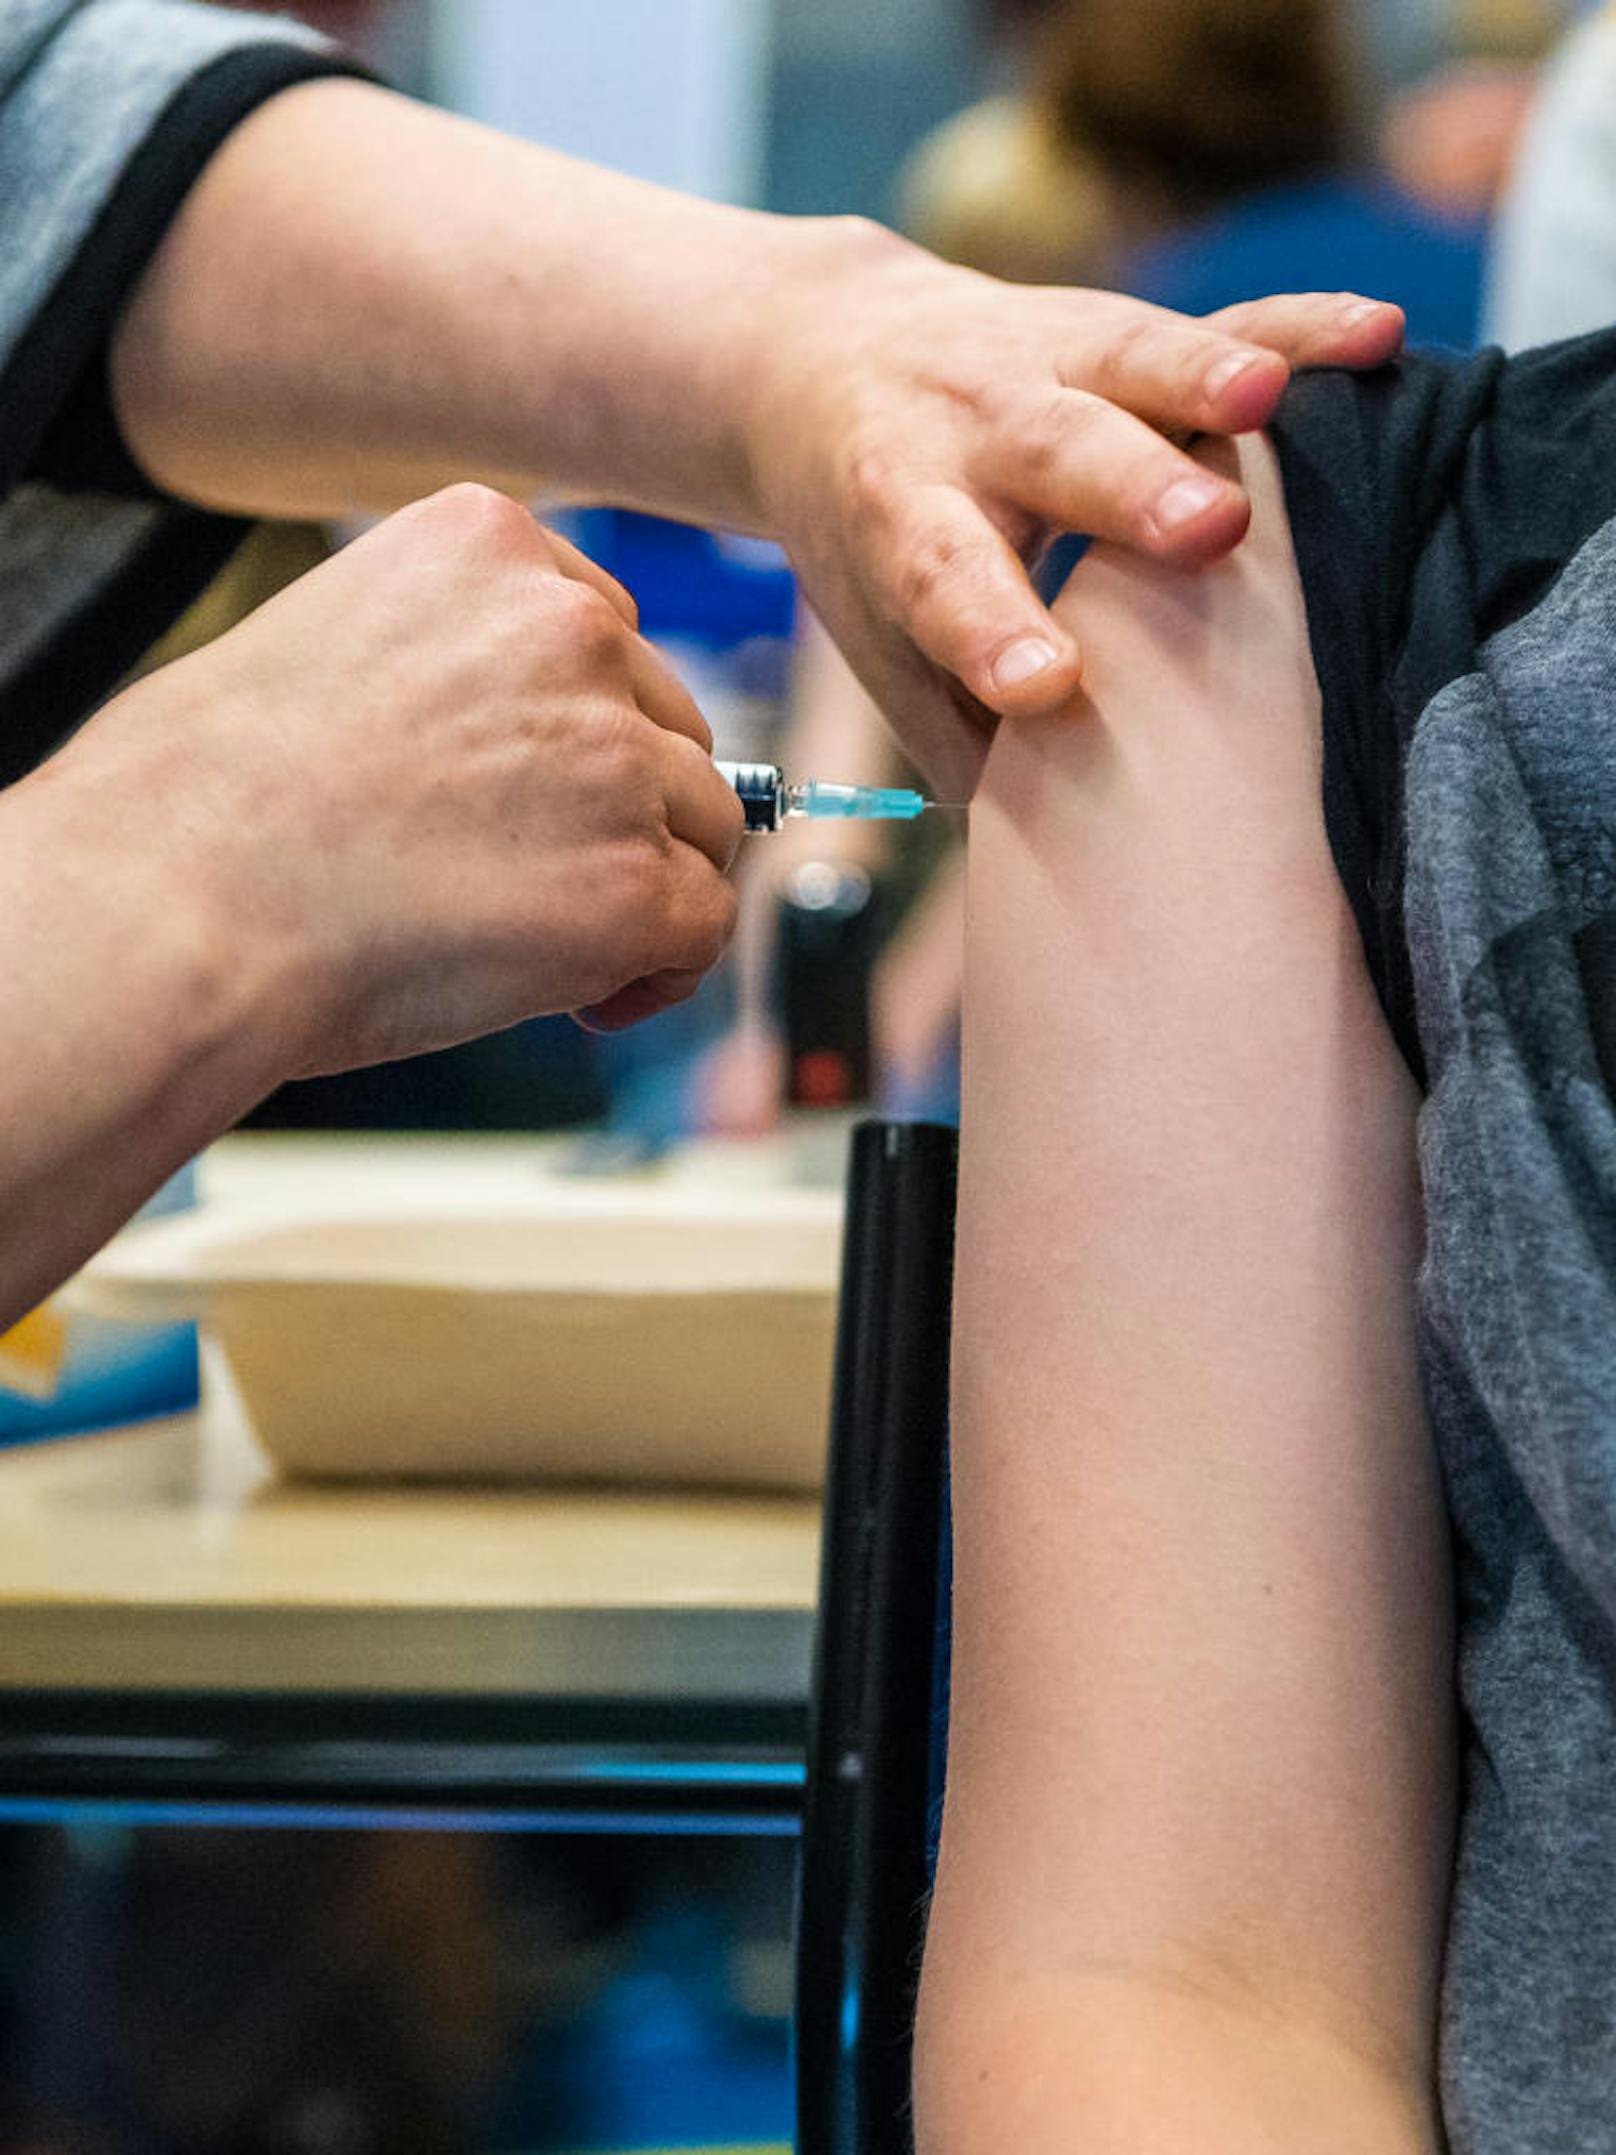 Schuld daran seien Impfskeptiker, die ihre Kinder und sich selbst vor den Krankheiten schützen wollen. Die EU will nun verstärkt dagegen vorgehen. (Symbolbild)